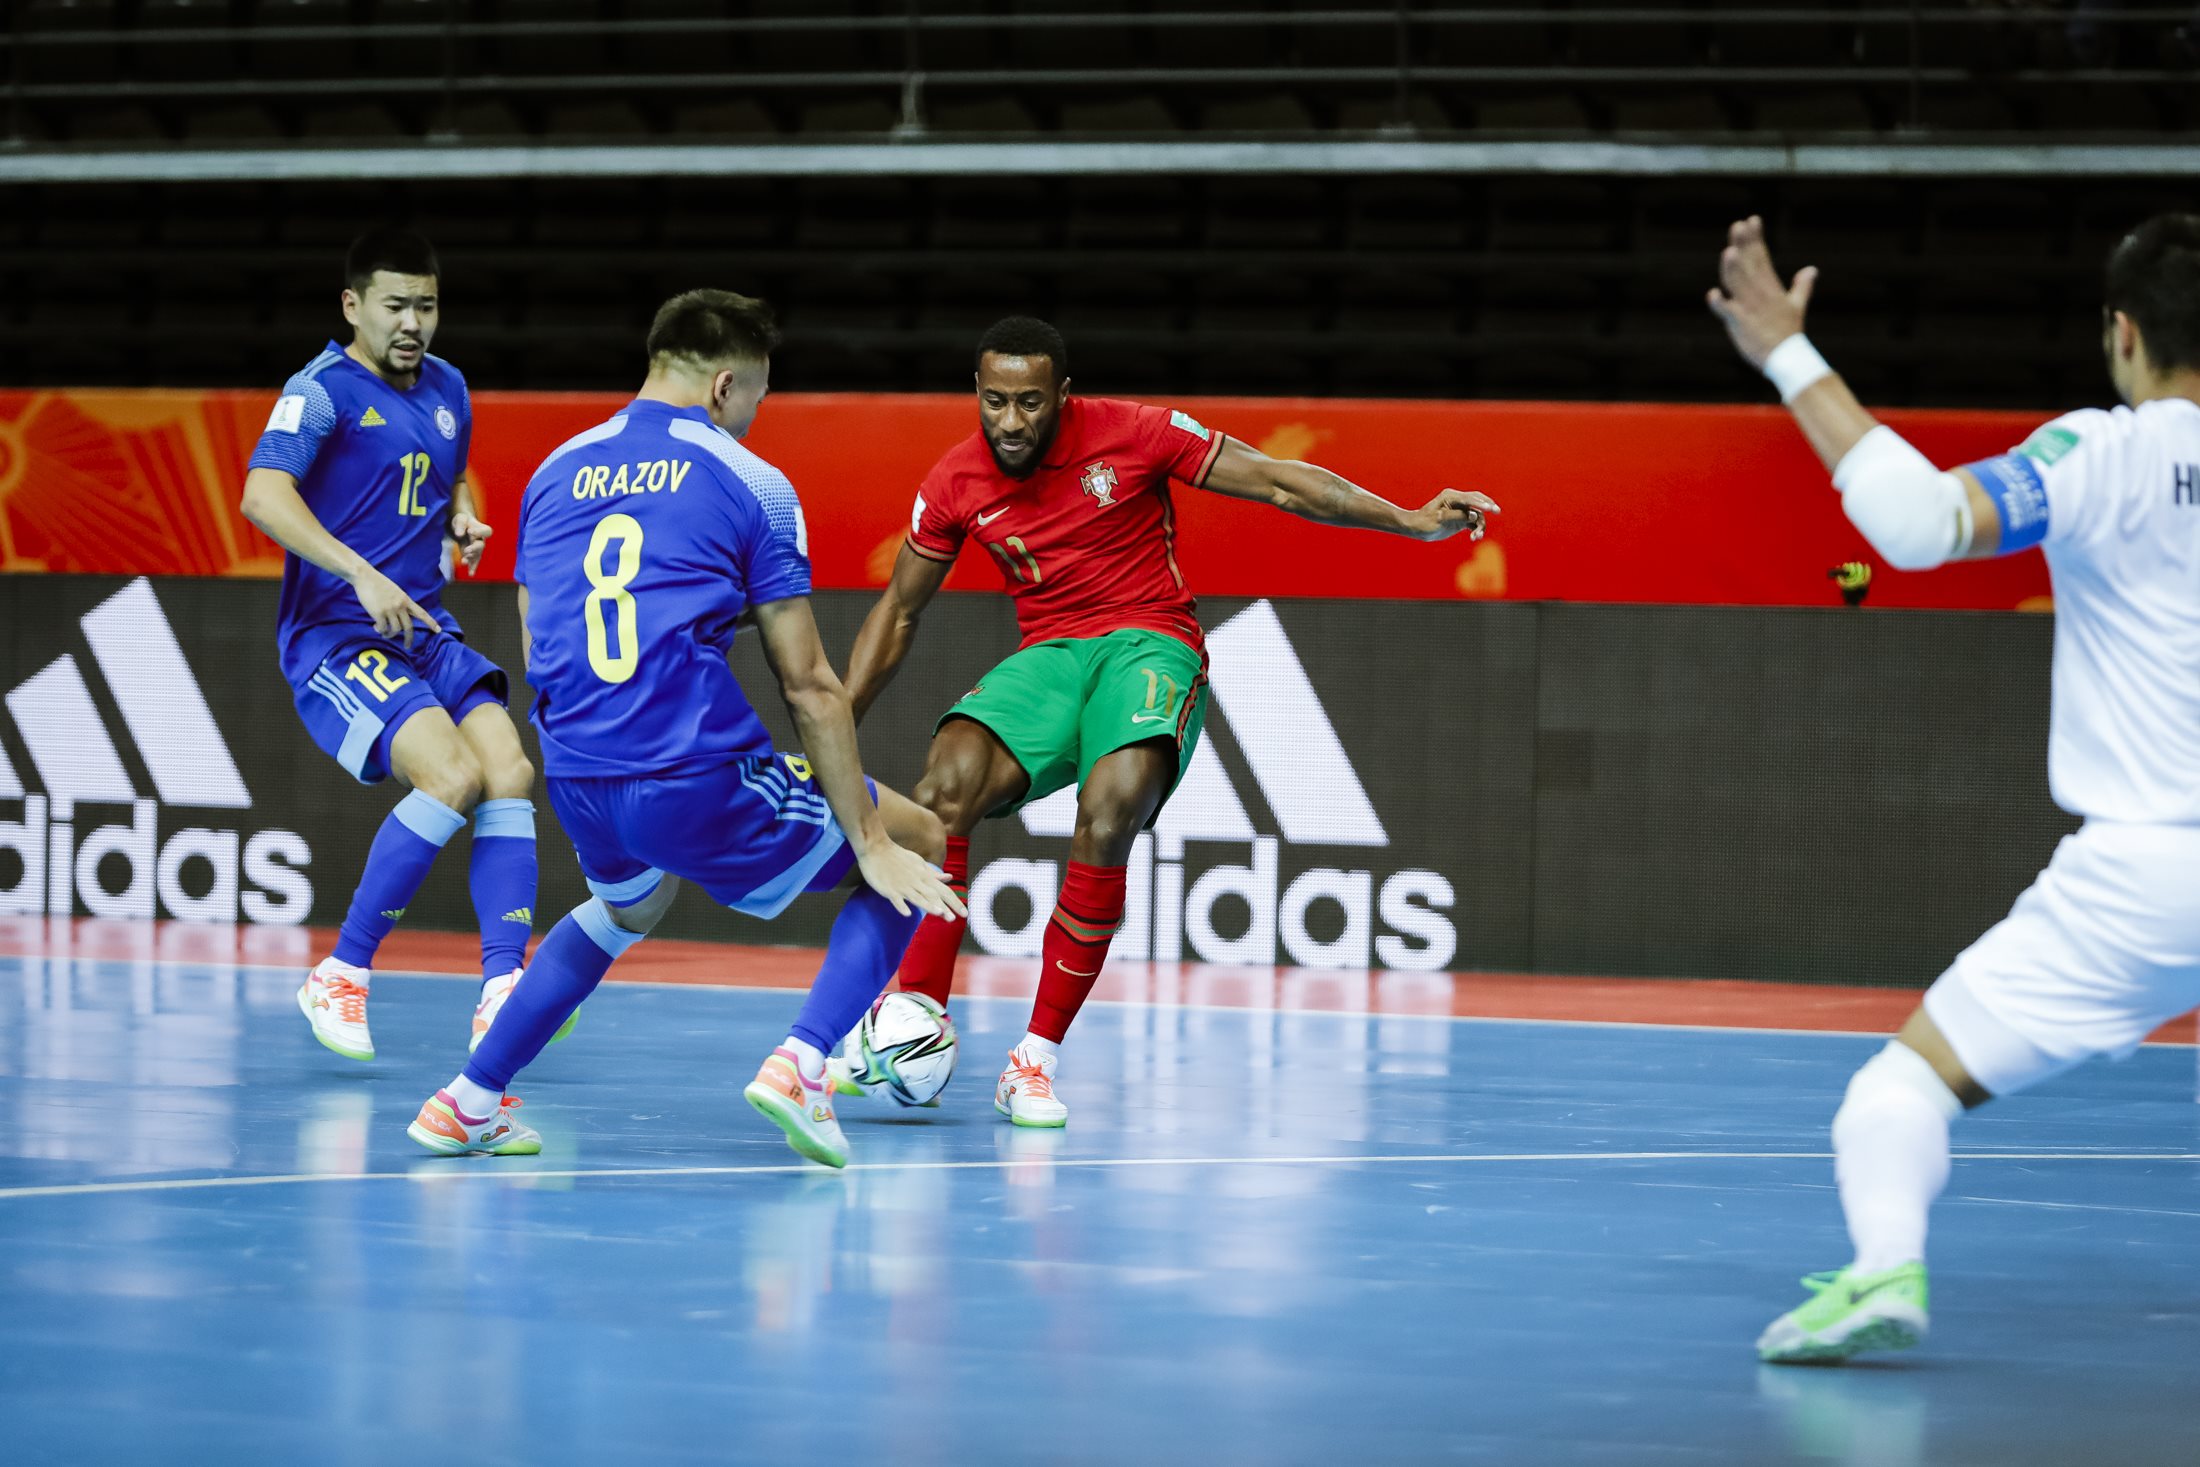 Portugal campeão mundial de futsal para atletas com Síndrome de Down -  Atualidade - SAPO 24